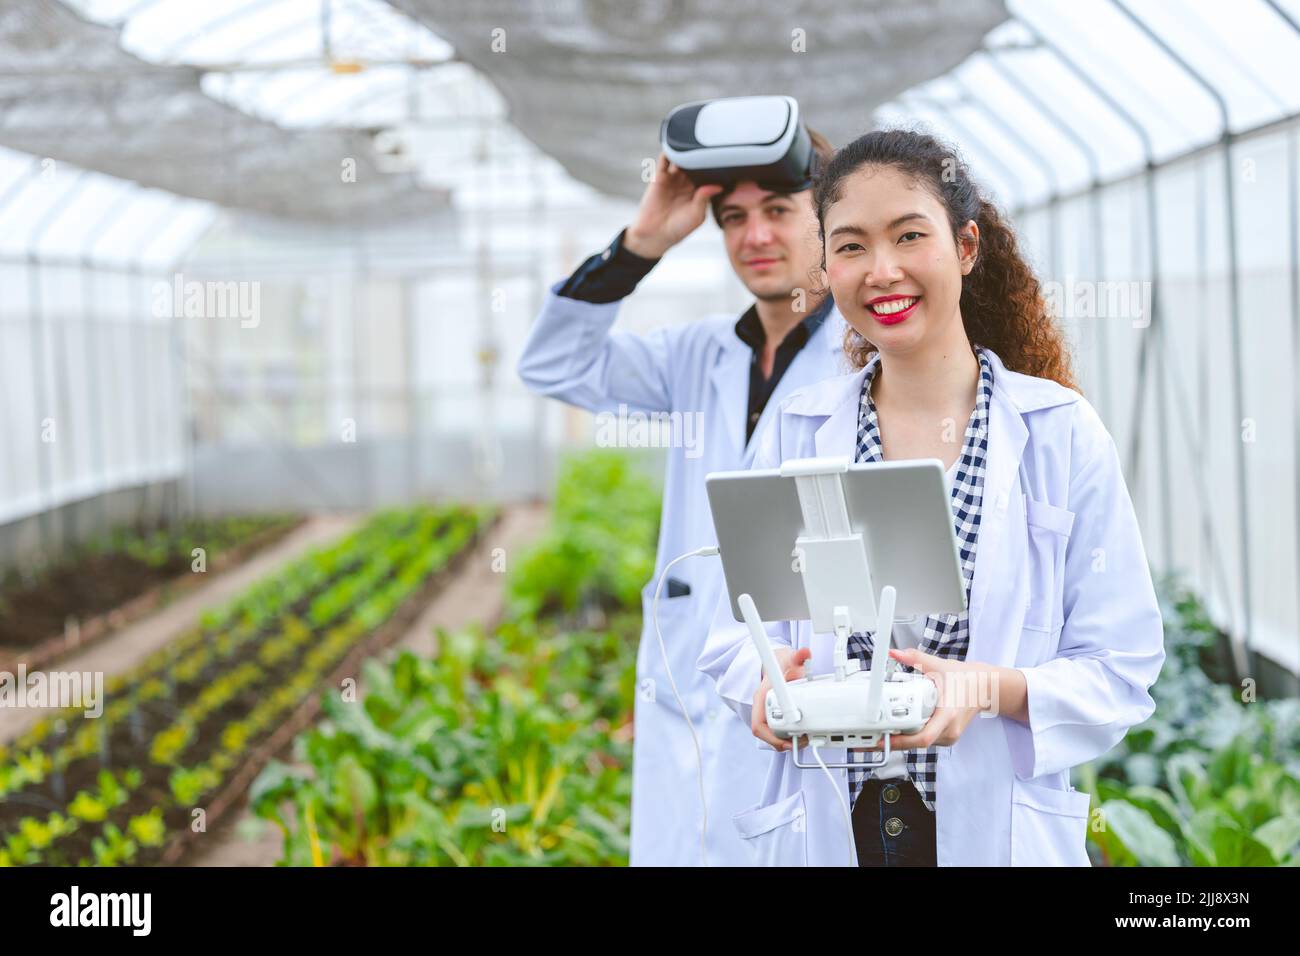 Un chercheur utilisant un contrôleur de drone avec des lunettes à vue aérienne surveille une plante en croissance dans une ferme agricole. Banque D'Images